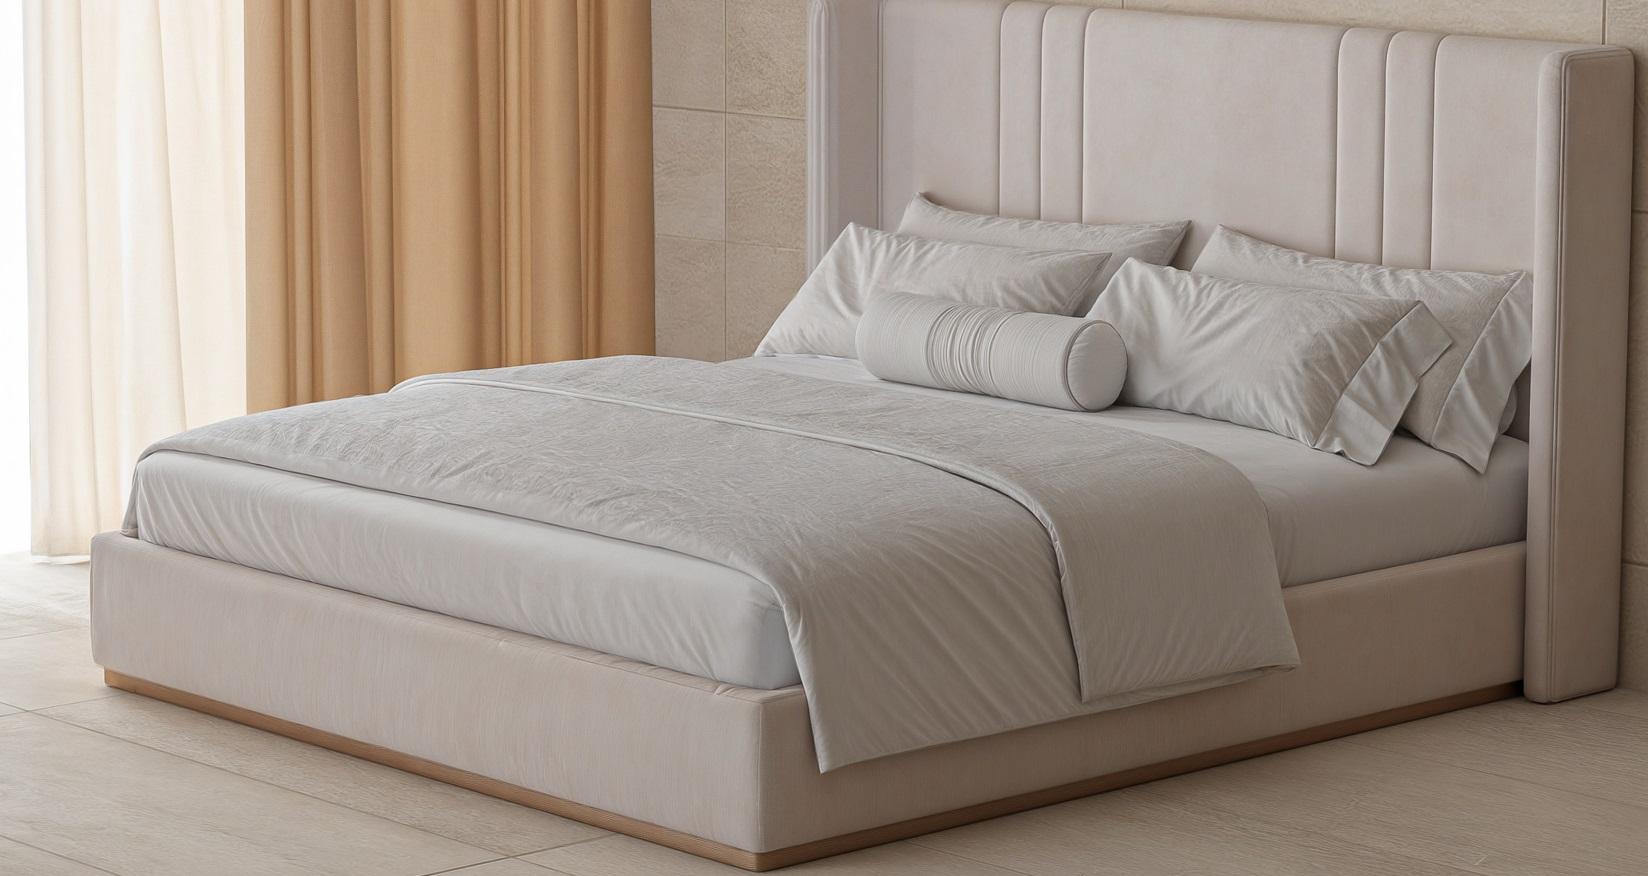 Dieses Bett ist ein Meisterwerk aus Leder mit einem Kopfteil, das mit minimalistischen, aber eleganten Nähten verziert ist, die das Bett zeitlos machen und sich nahtlos an jeden Einrichtungsstil anpassen. Das raffinierte Design strahlt Raffinesse